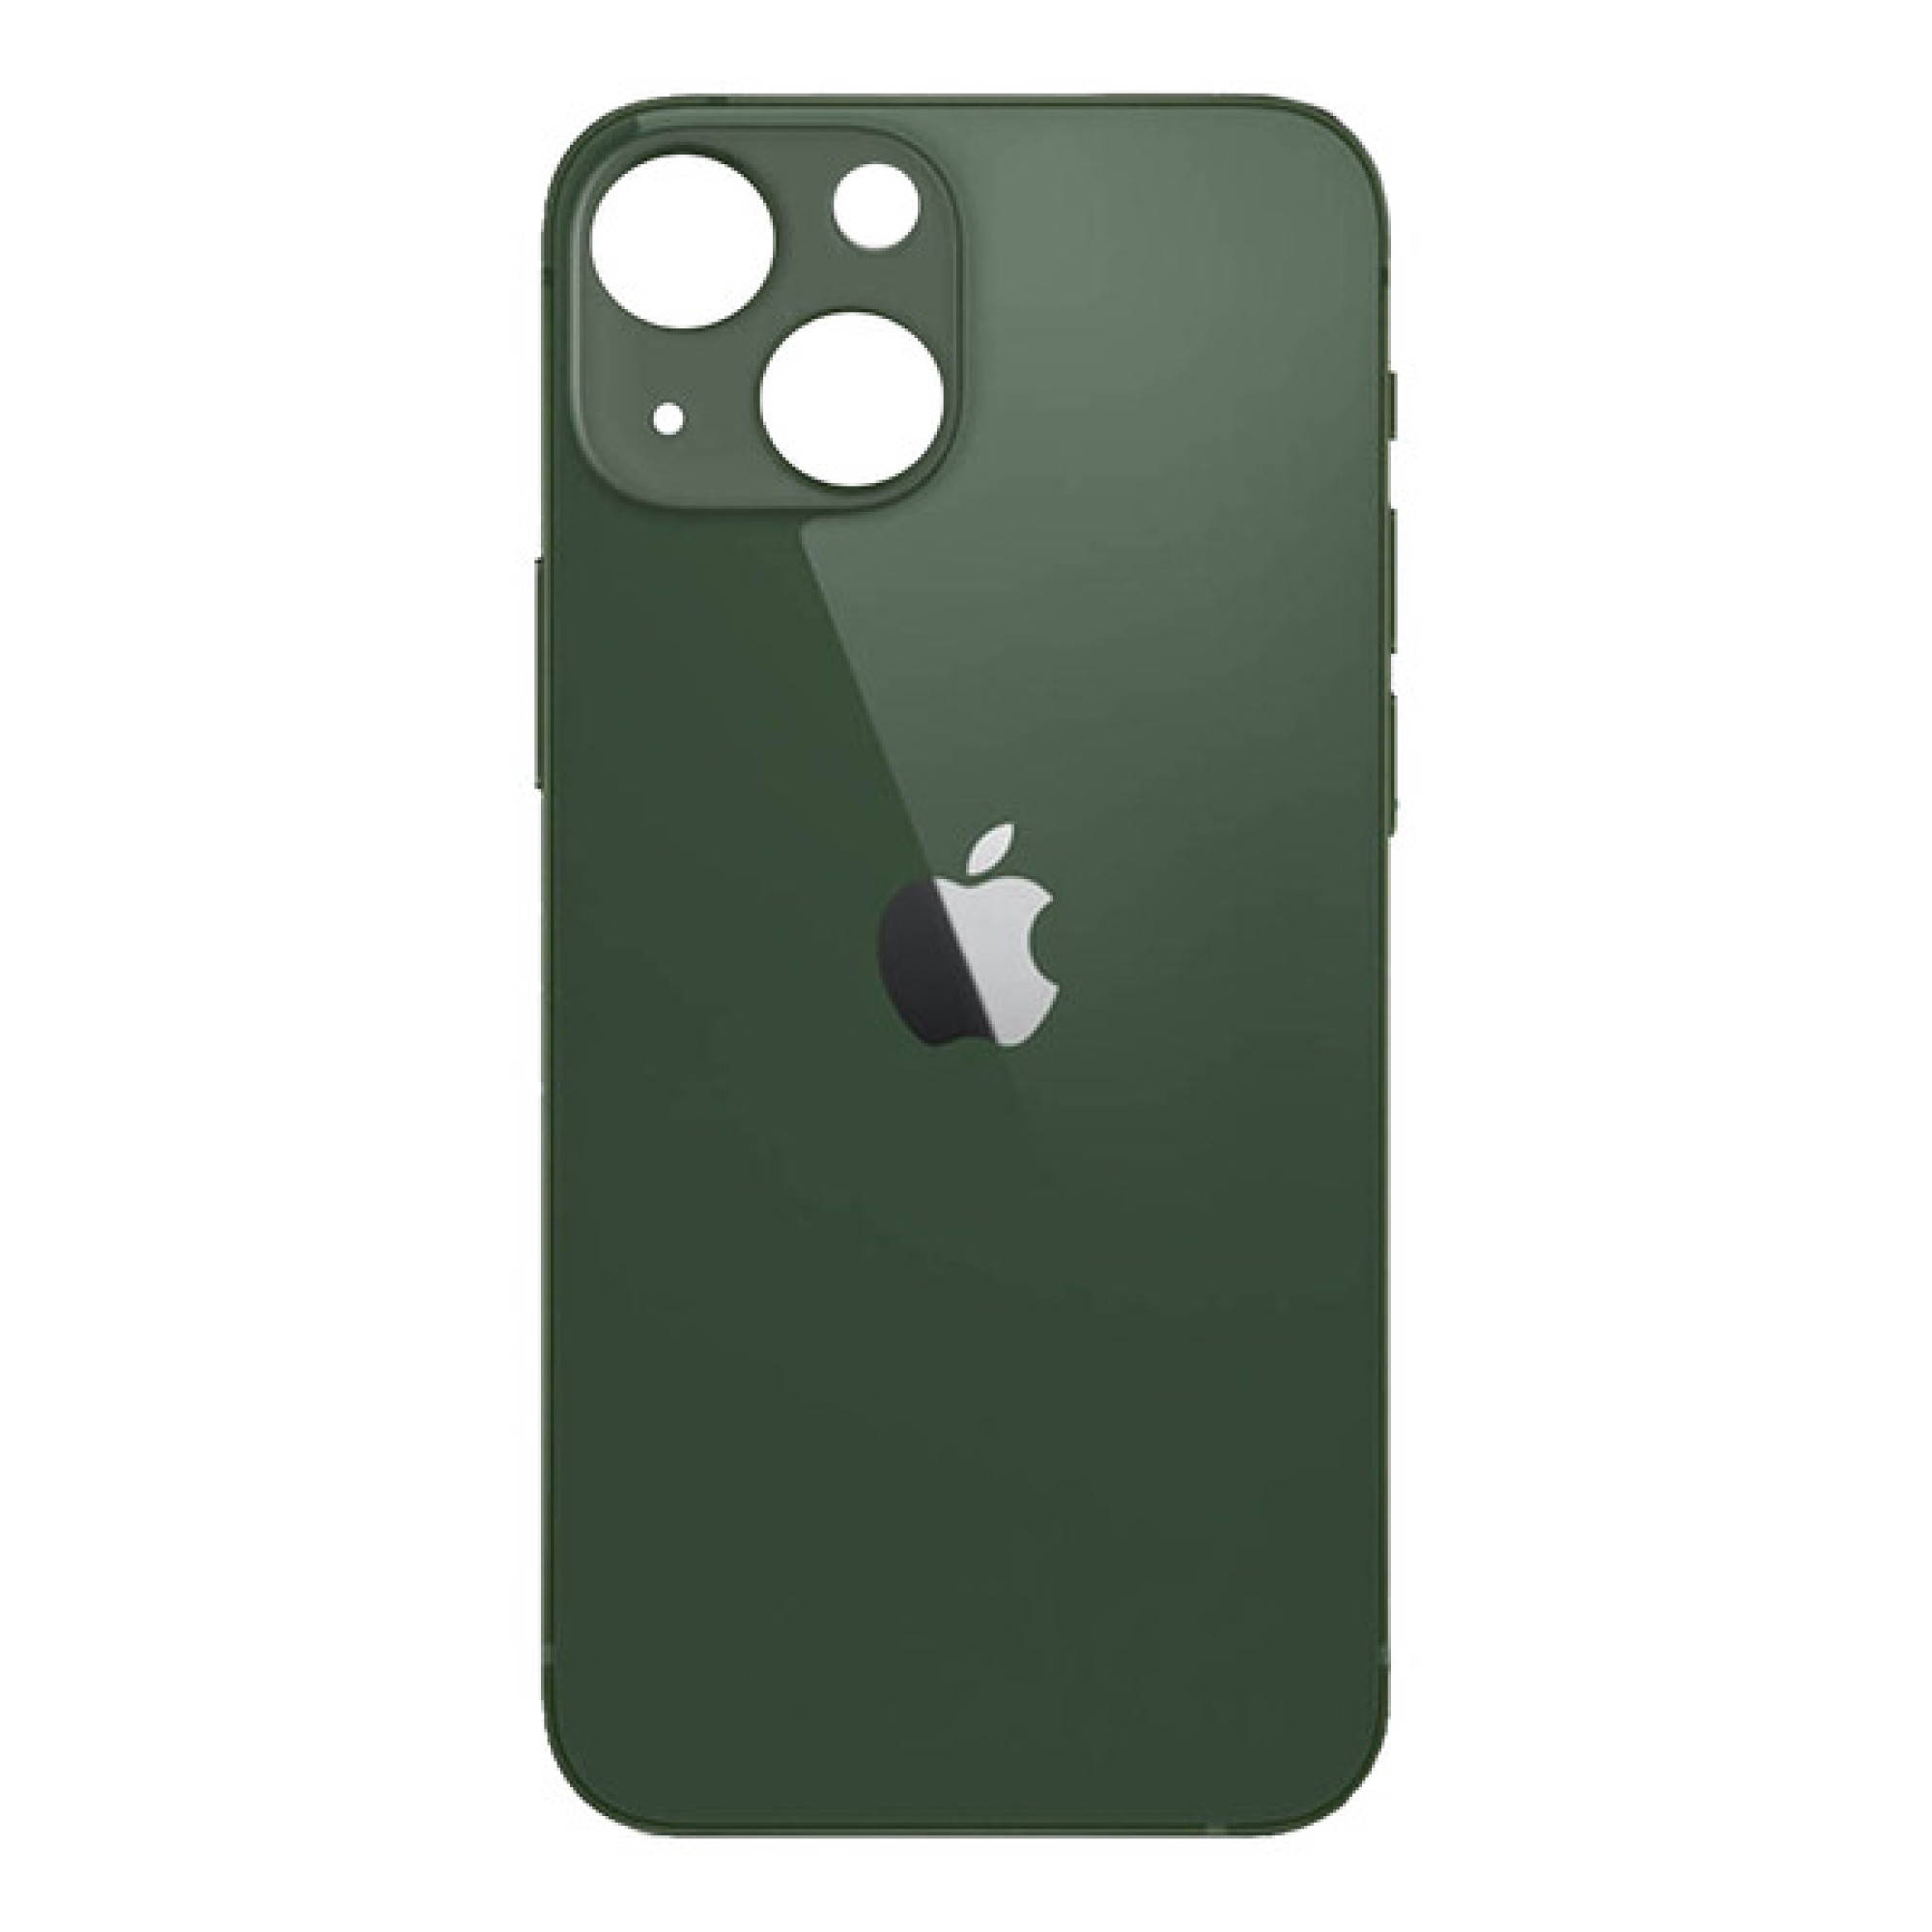 Задняя крышка для Apple iPhone 13 mini (широкое отверстие под камеру), зеленая - фото